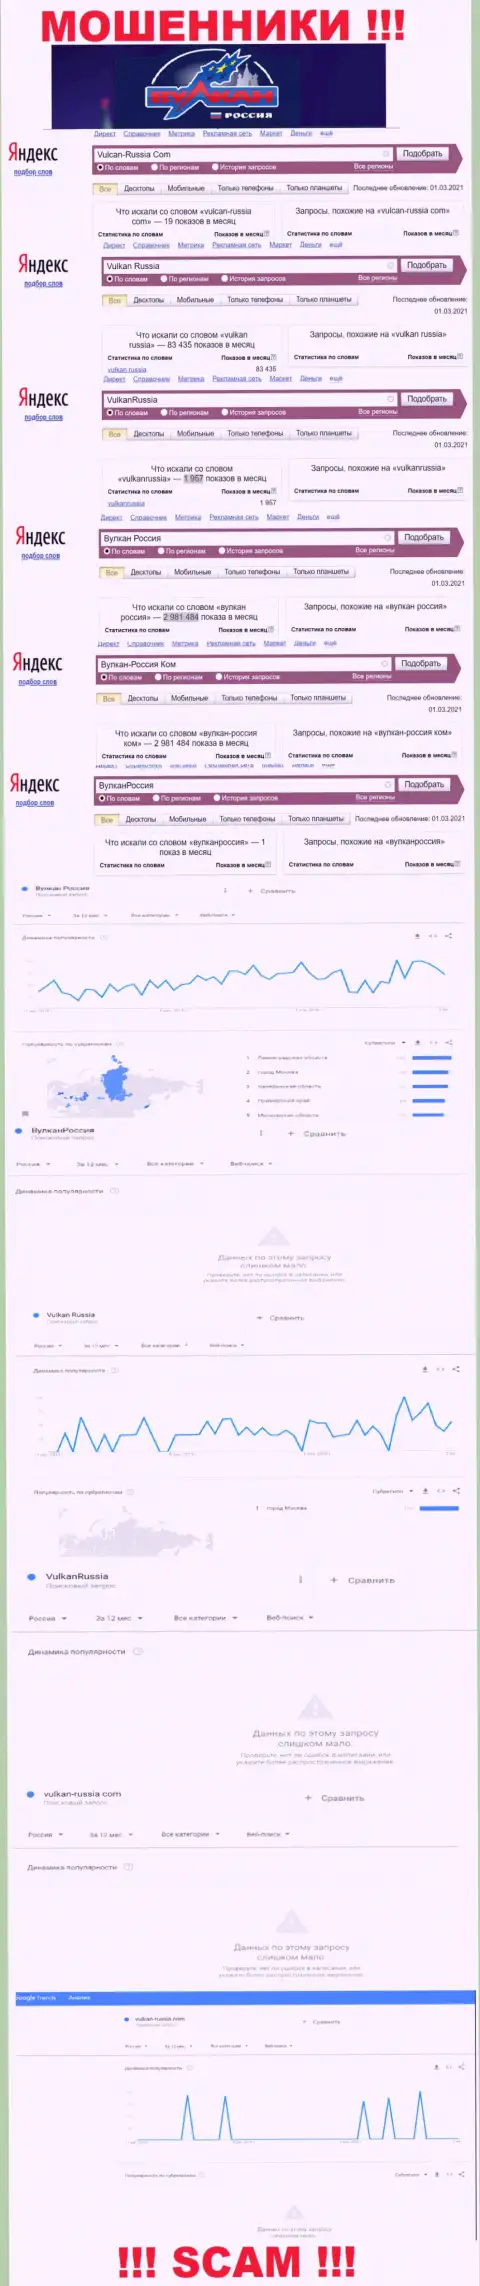 Статистические показатели суммарного числа обзоров данных о мошенниках Вулкан Россия в сети